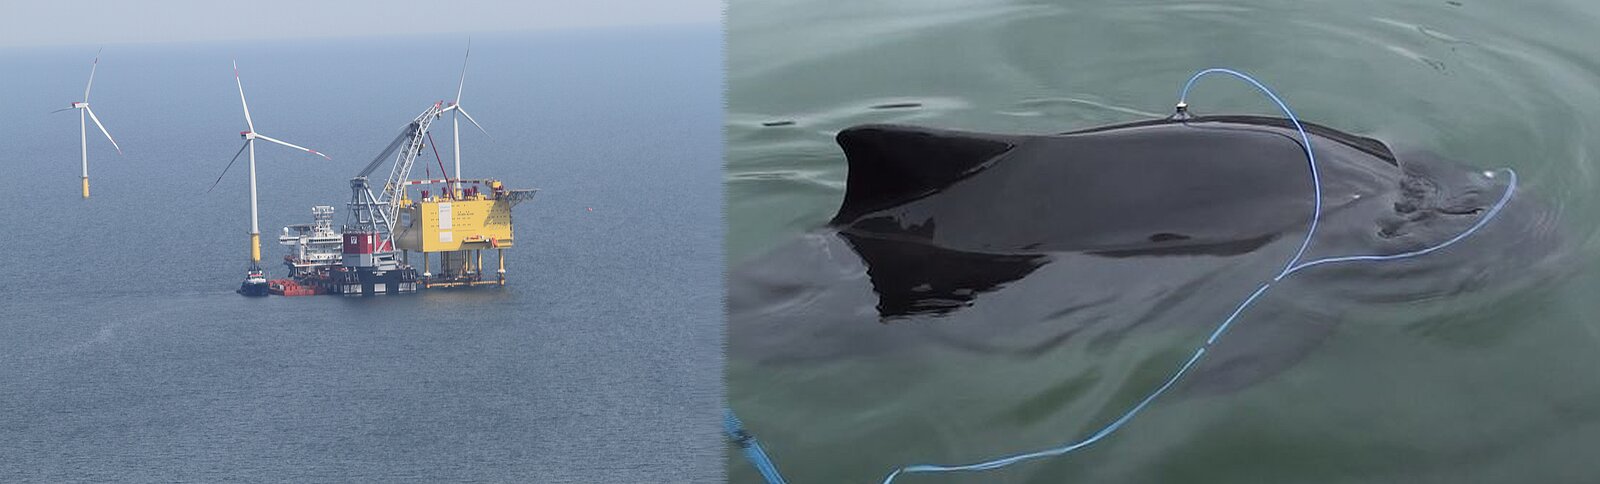 Offshore Windpark im Bau und ein Schweinswal mit angelegten Elektroden für Hörtest